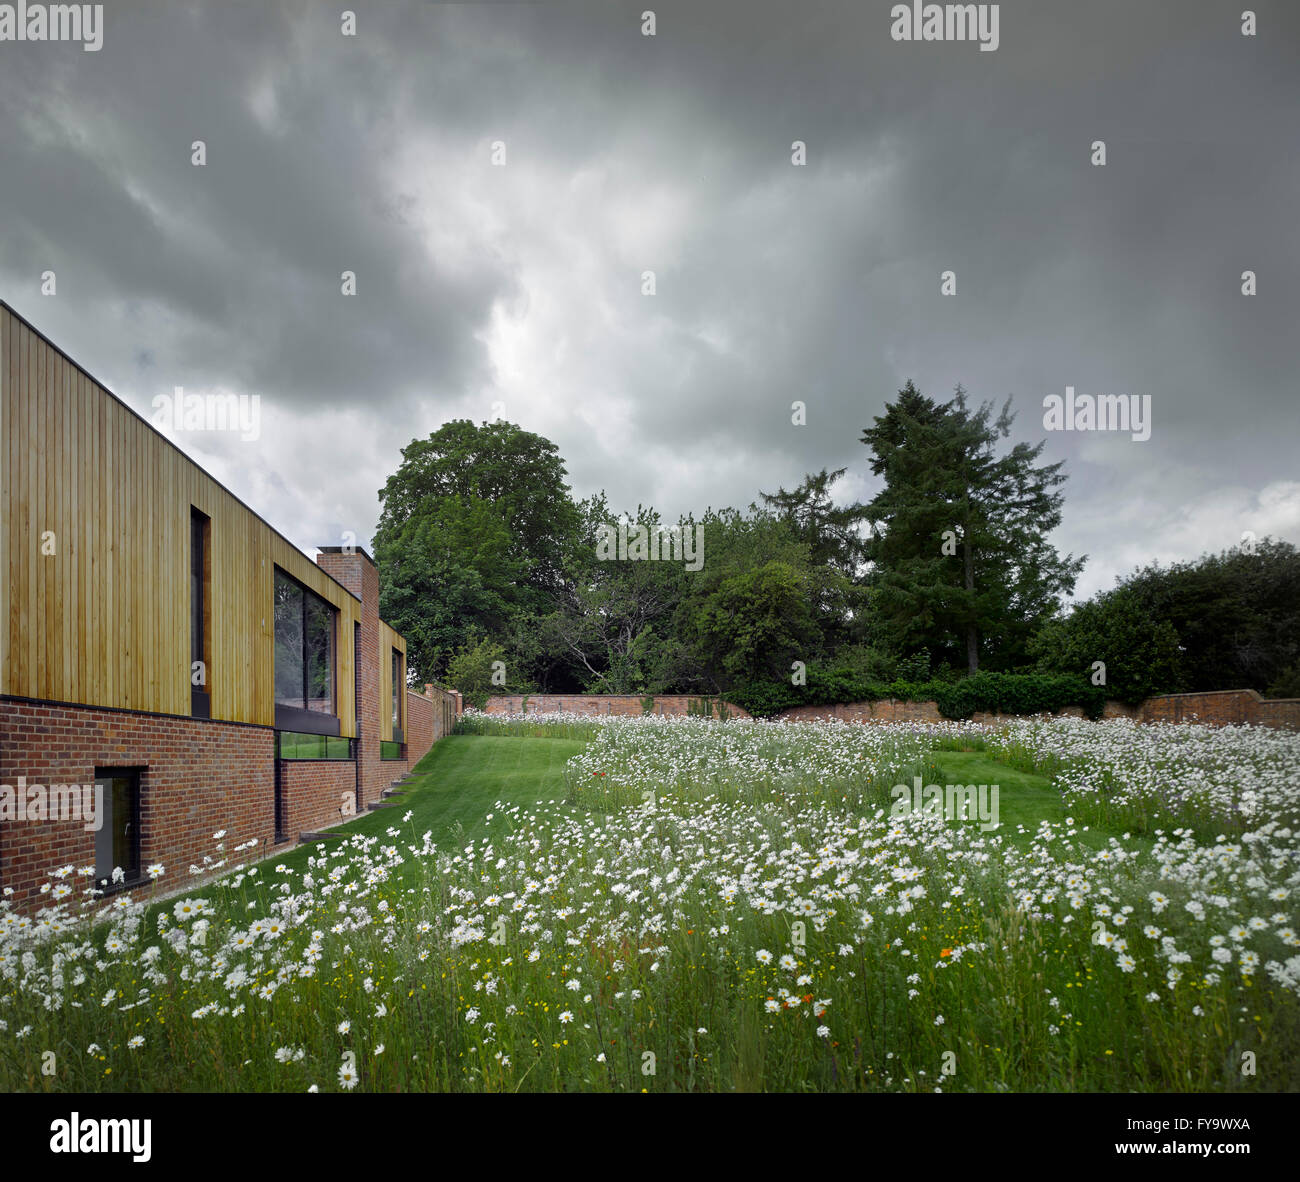 Perspektive entlang der Außenfassade inmitten einer historischen ummauerten Garten mit einer Wildblumenwiese. Cheeran Haus, Lower Basildon, Großbritannien. Architekt: John Pardey Architekten, 2015. Stockfoto